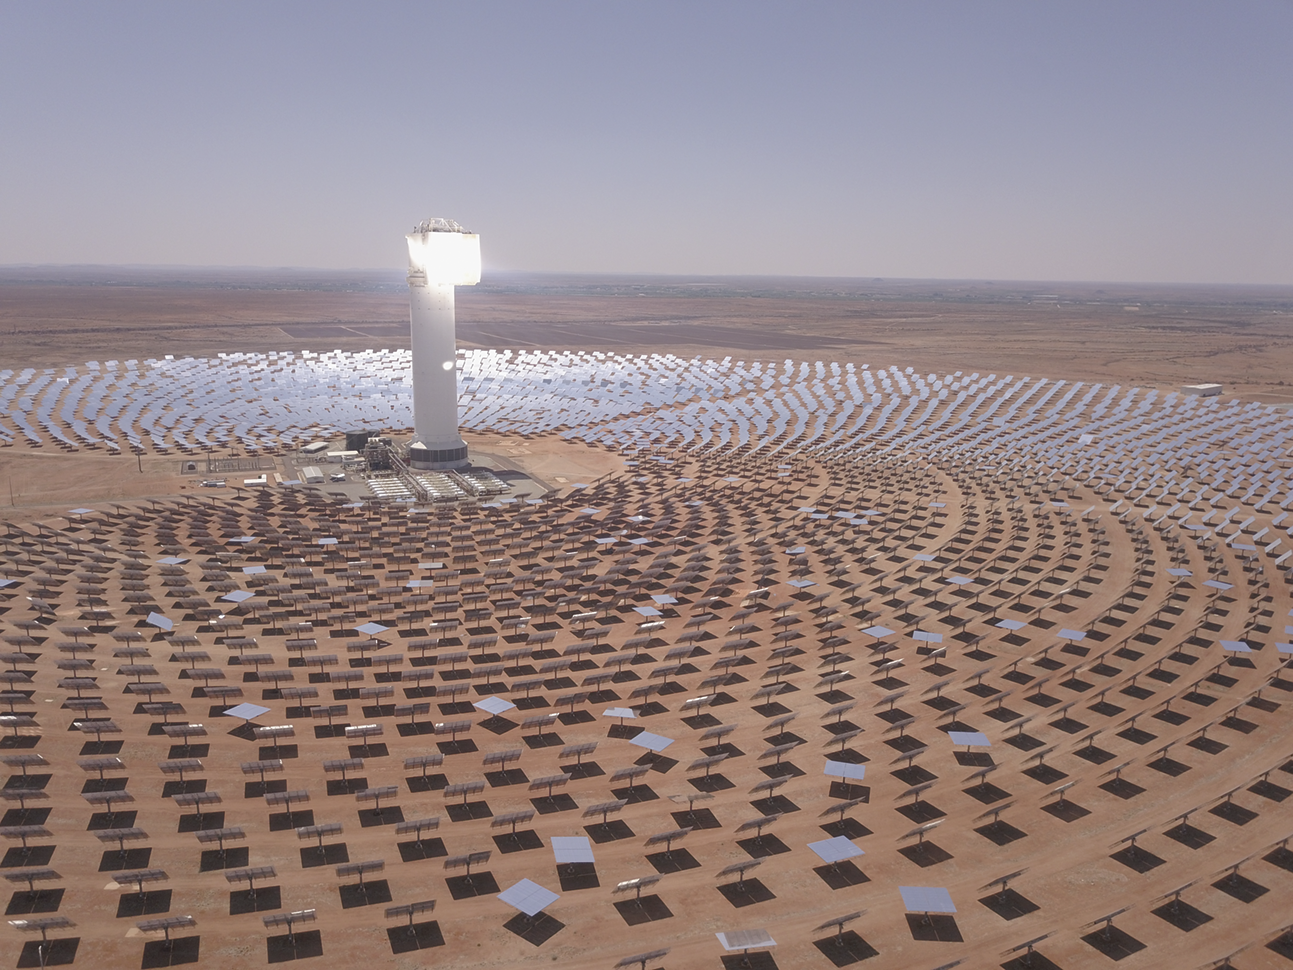 Fotografia. Uma grande quantidade de painéis solares dispostos em círculos ao redor de uma construção com uma torre iluminada no deserto.